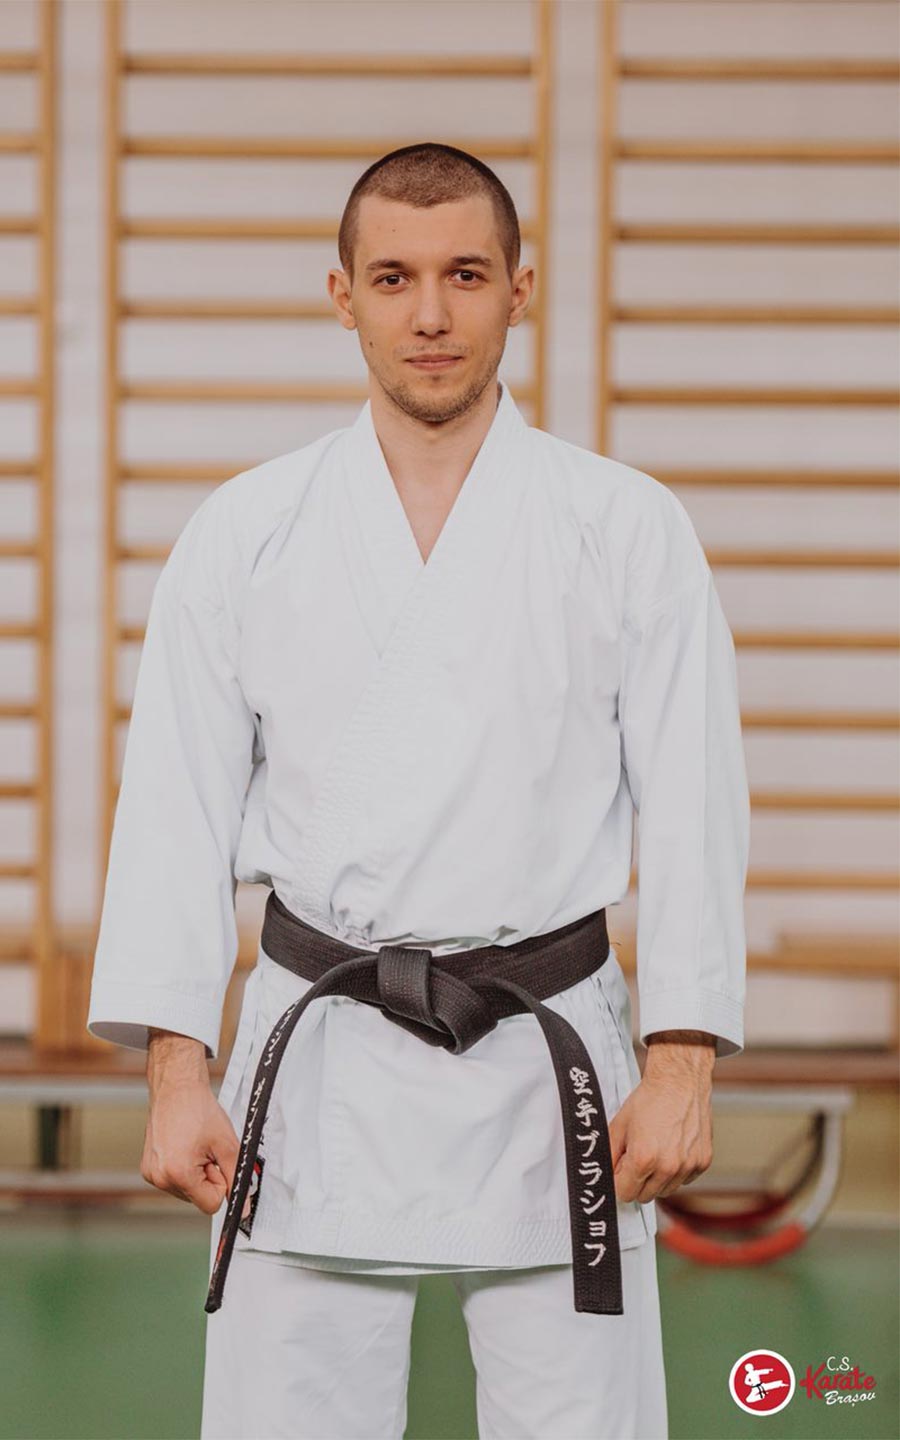 Interviu cu Dragoș Dăncescu, campion mondial și european la karate